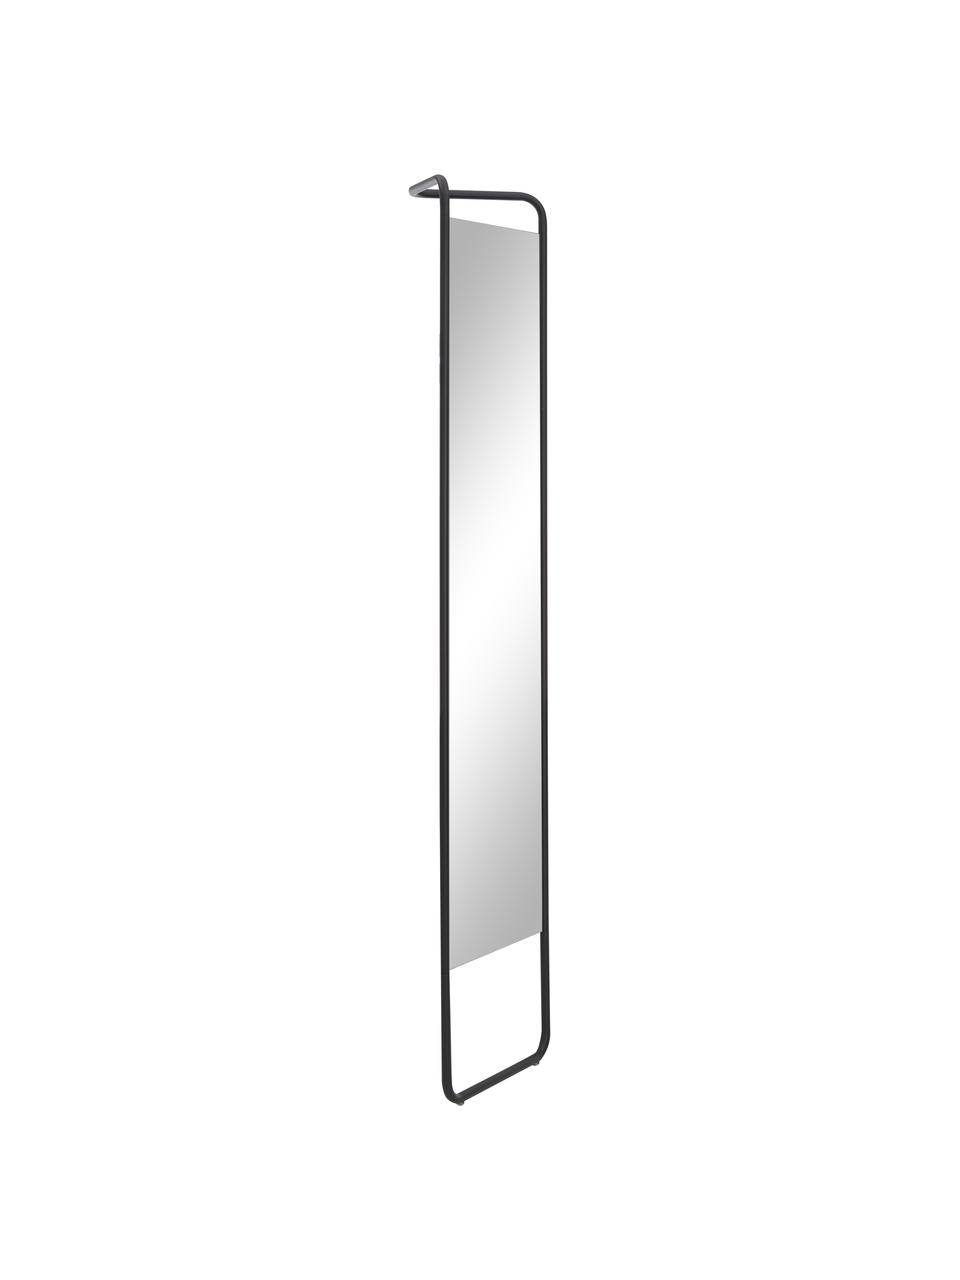 Eckiger Anlehnspiegel Kasch mit schwarzem Aluminiumrahmen, Rahmen: Aluminium, pulverbeschich, Spiegelfläche: Spiegelglas, Schwarz, B 42 x H 175 cm